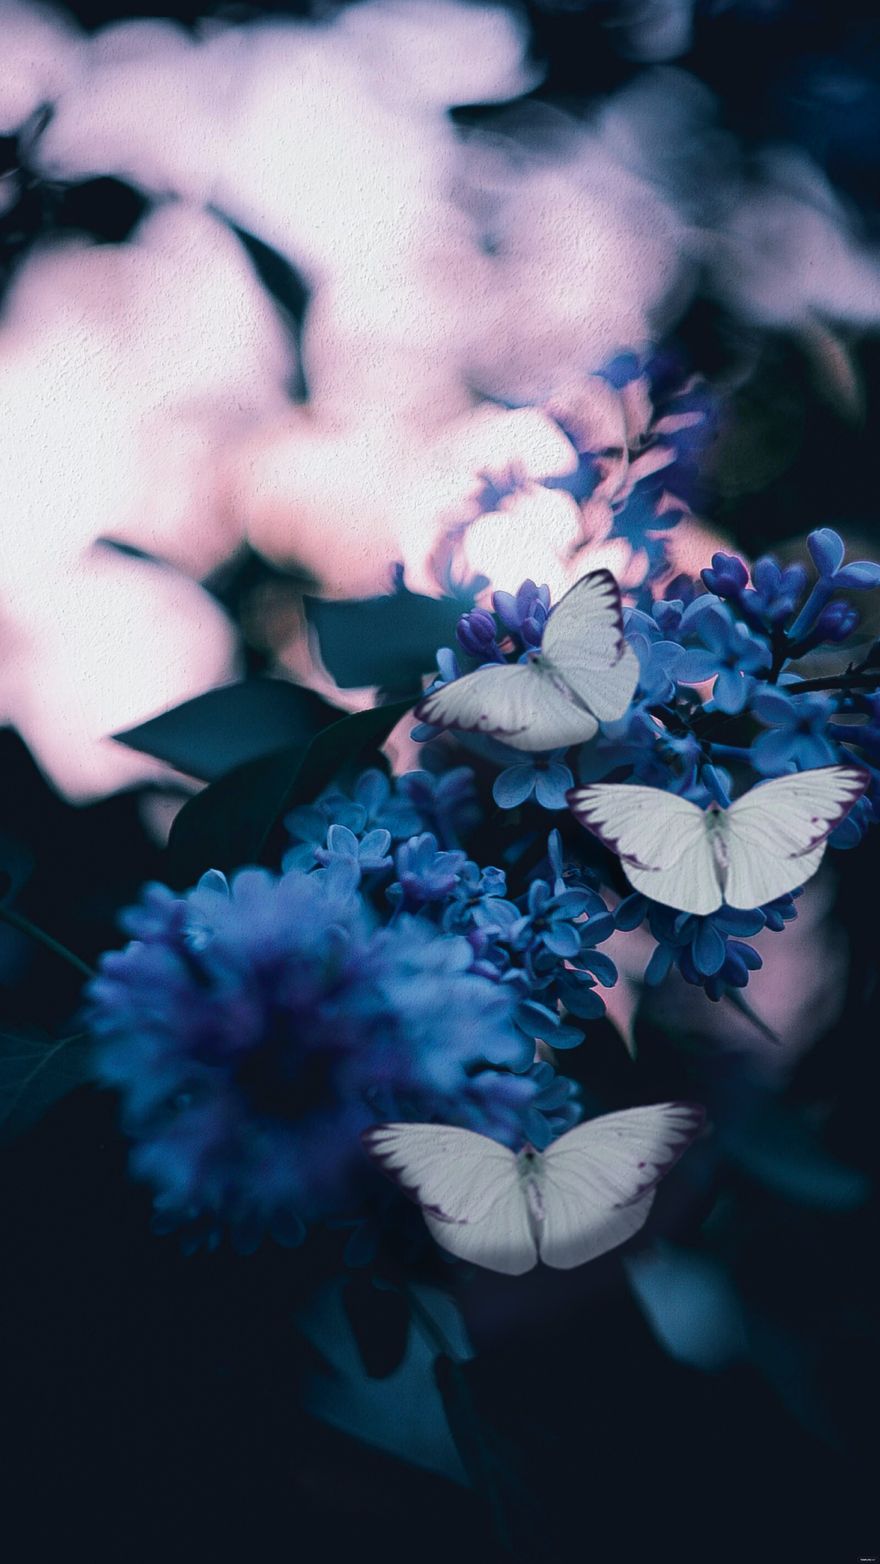 White Blur Background - JPG 